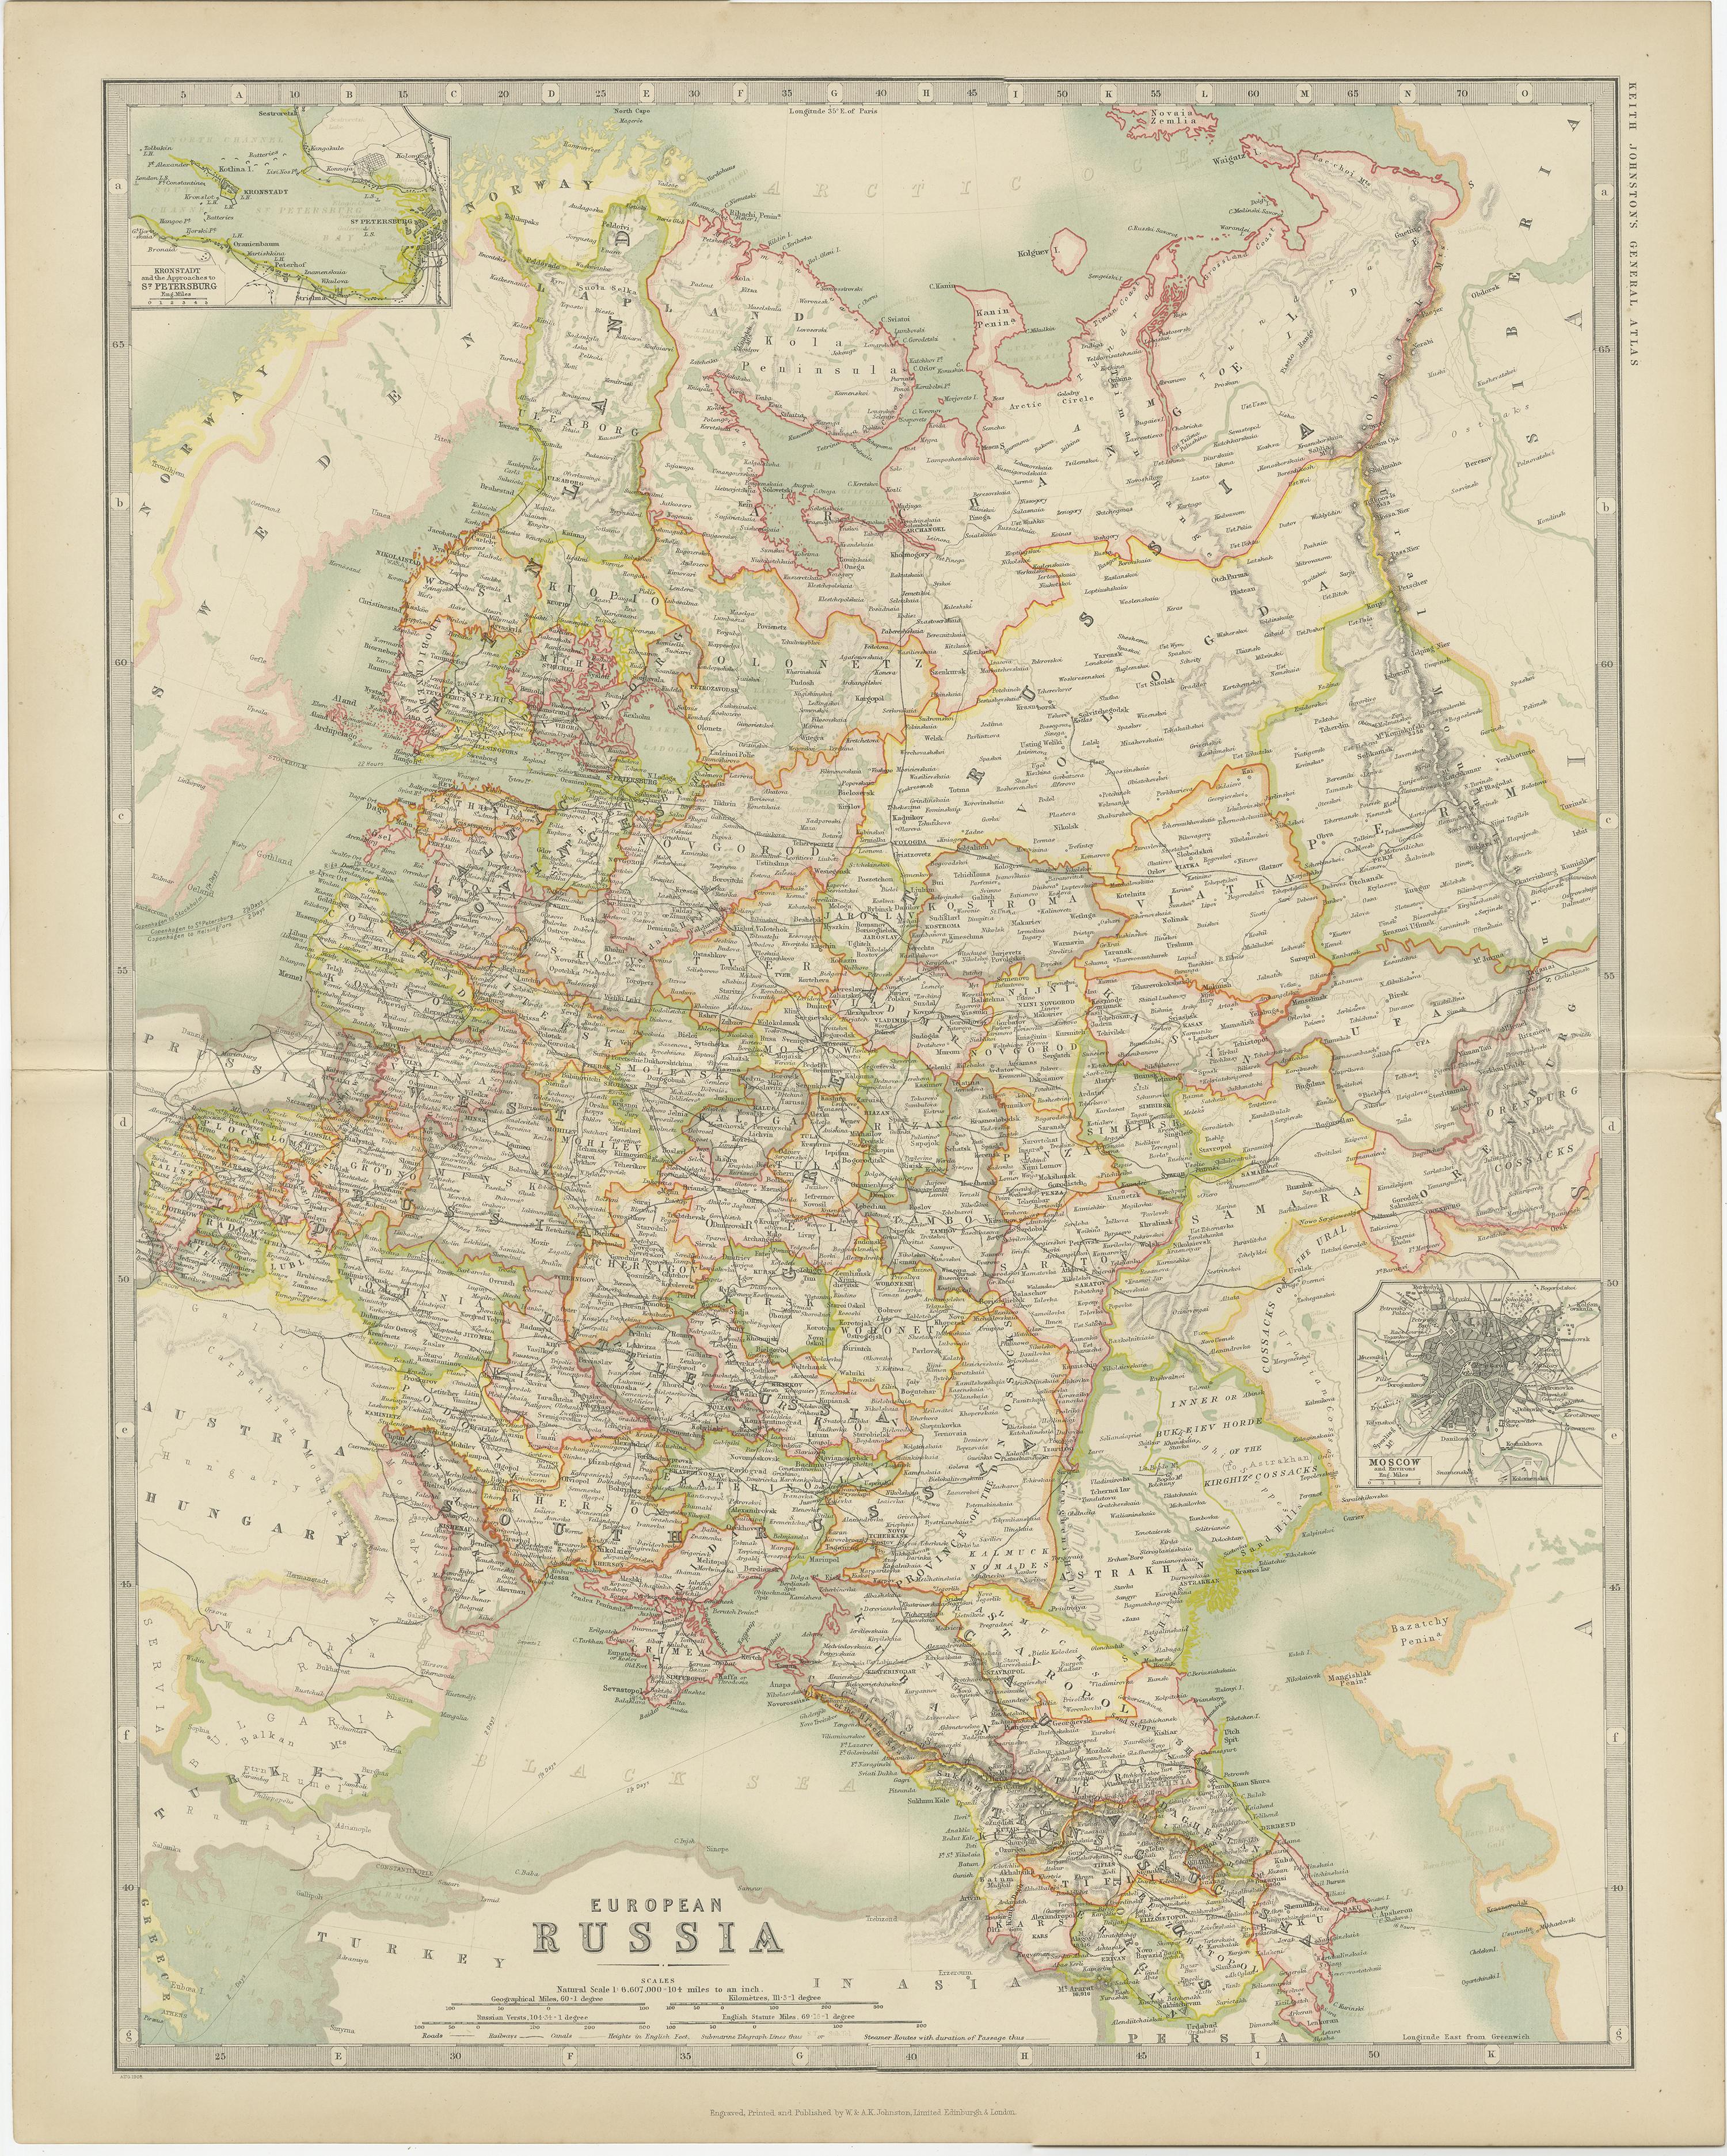 Antike Karte mit dem Titel 'Europäisches Russland'. Original antike Karte von Russland in Europa. Mit beigefügten Karten von St. Petersburg und Moskau. Diese Karte stammt aus dem 